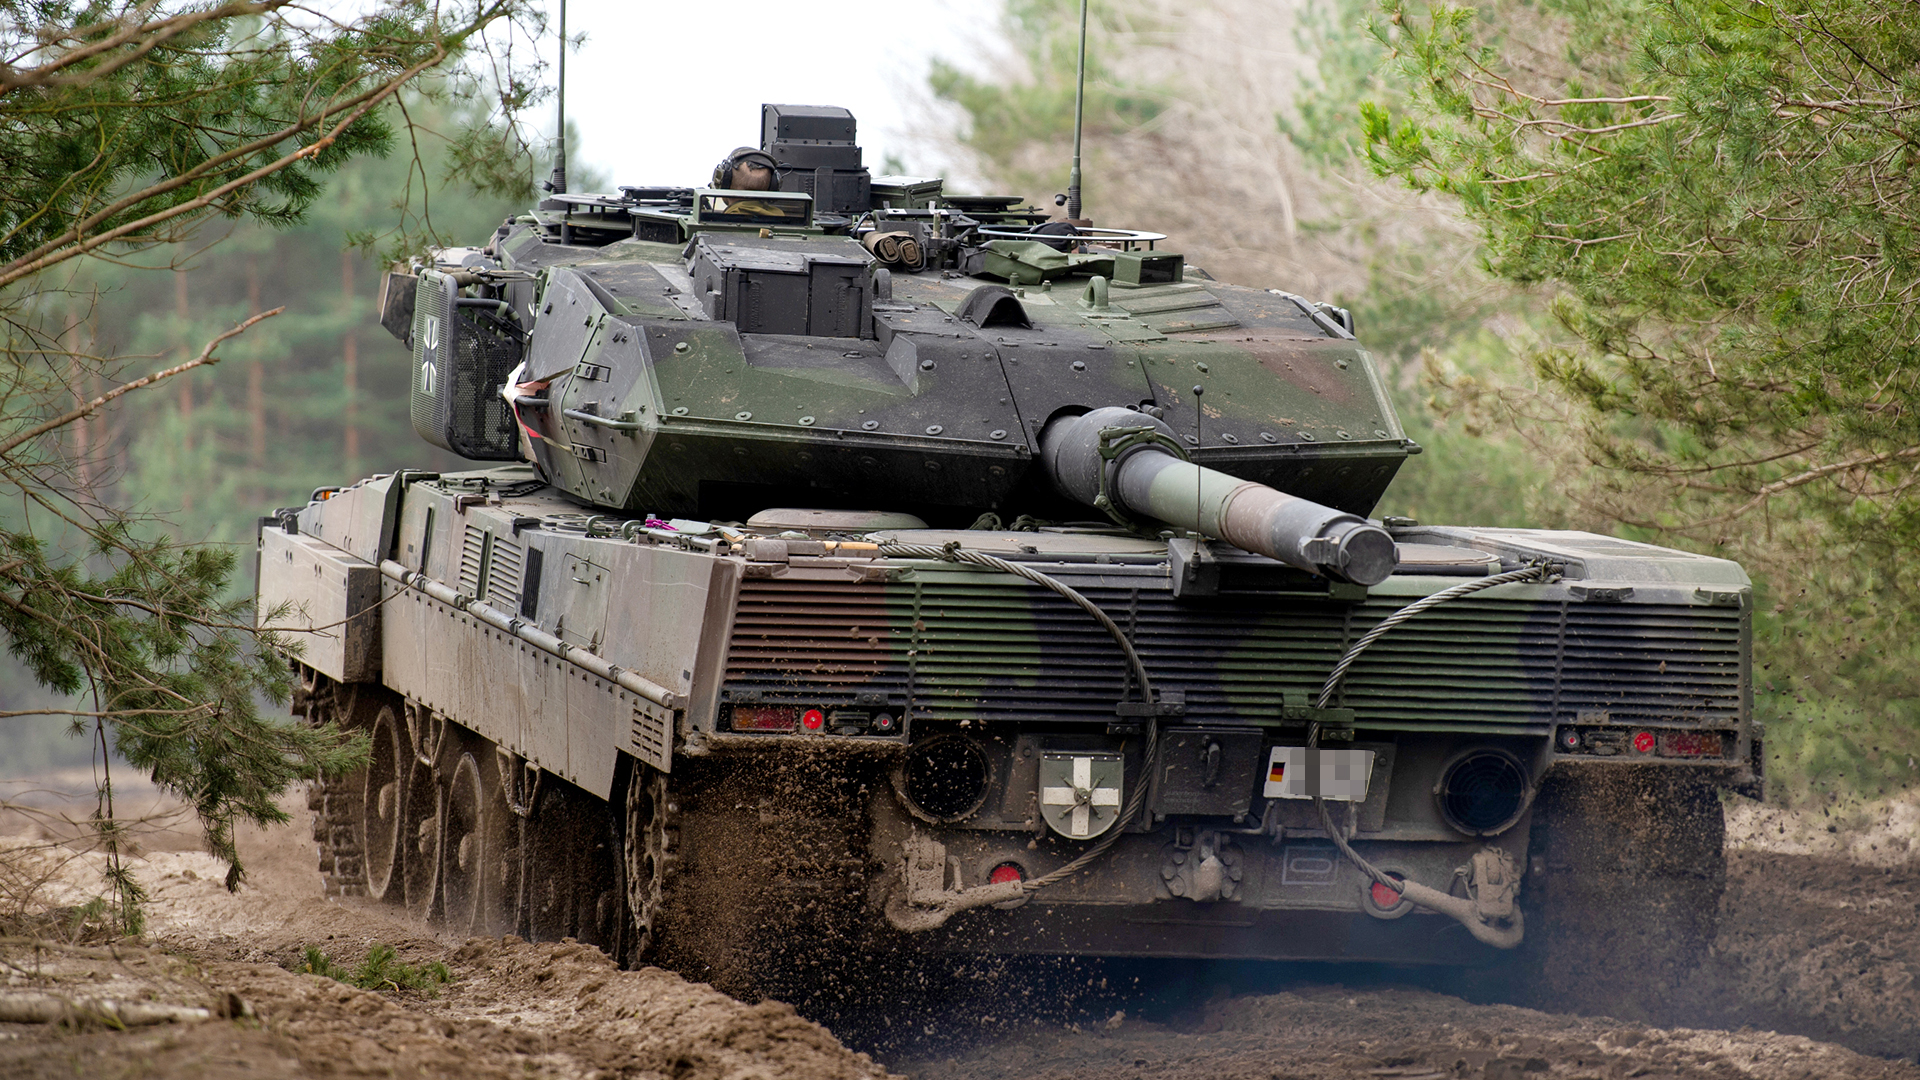  Ein Kampfpanzer vom Typ Leopard 2 A7V Bundeswehr fährt während einer Übung auf dem Truppenübungsplatz.